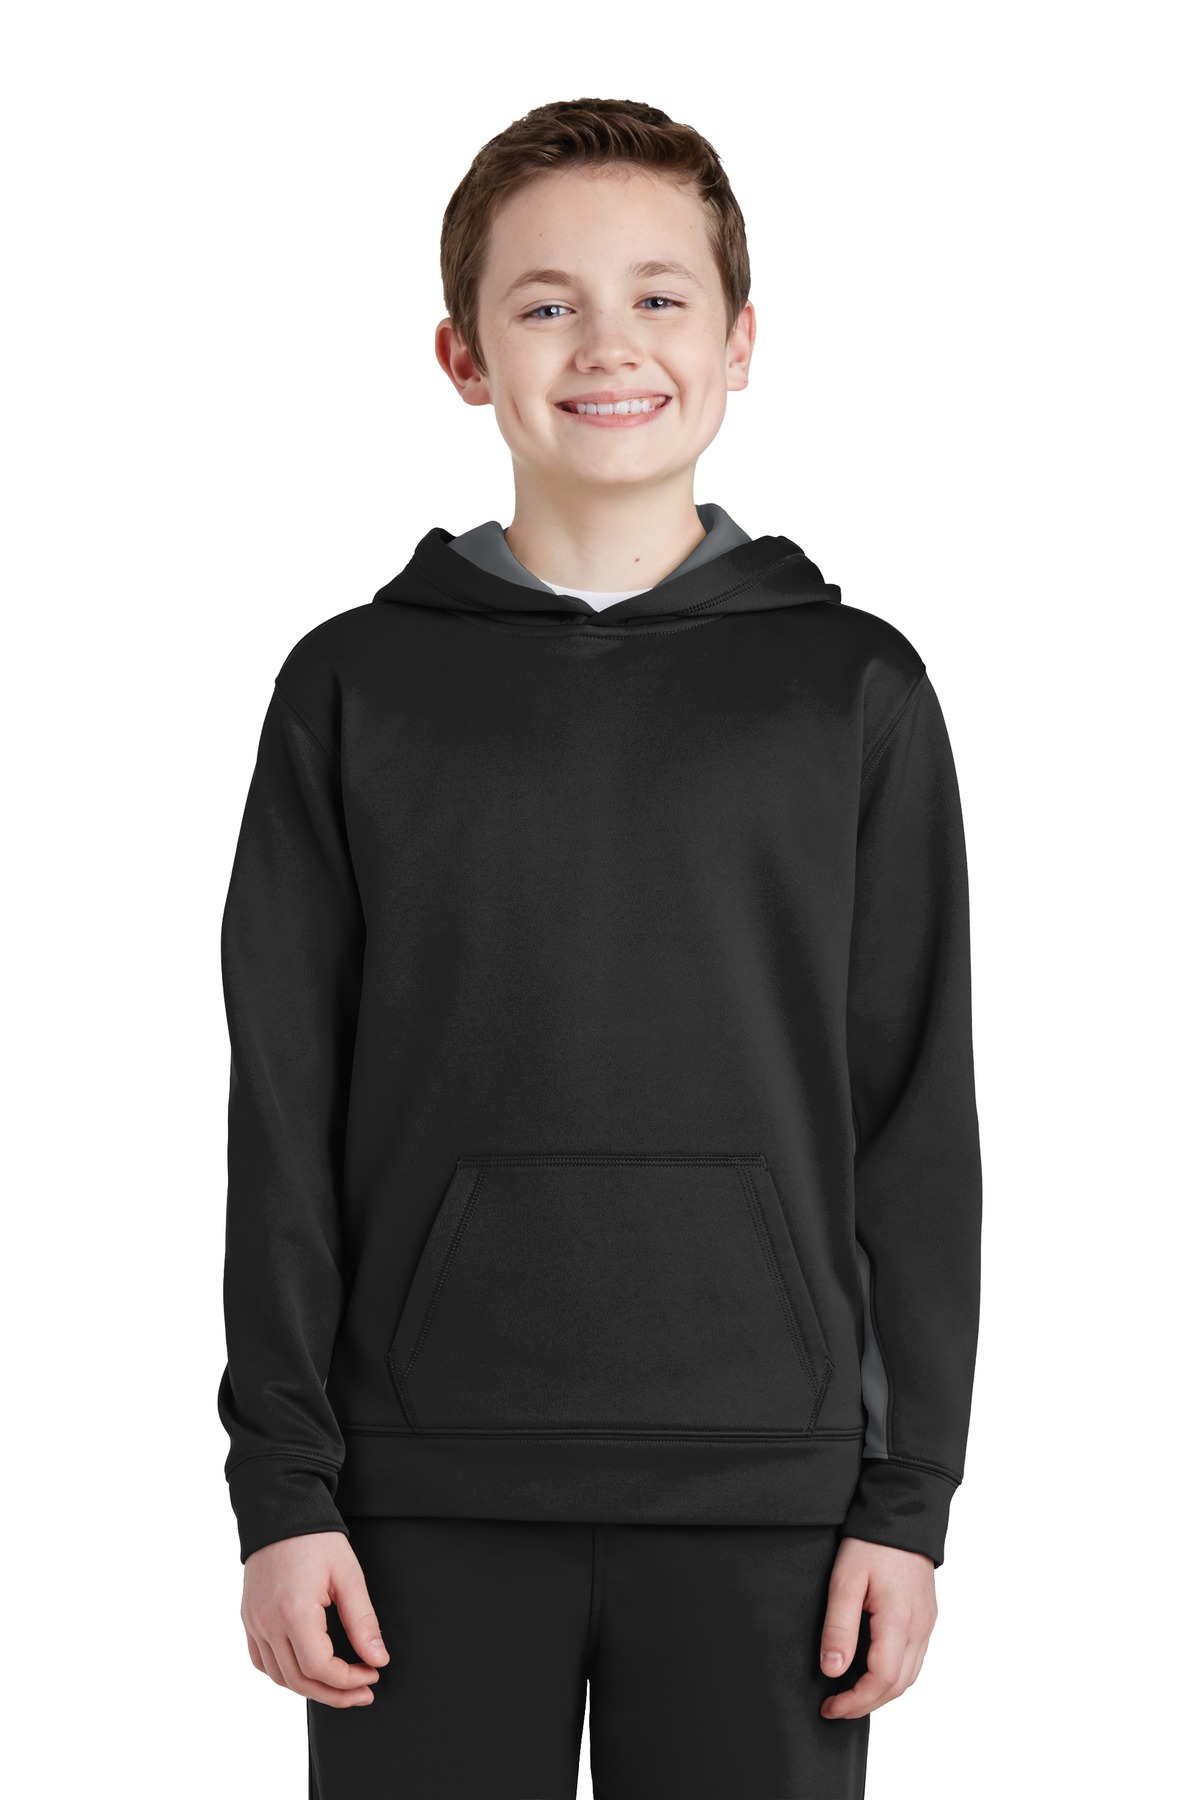 Sport-Tek Youth Sweatshirts & Fleece for Hospitality ® Youth Sport-Wick® Fleece Colorblock Hooded Pullover.-Sport-Tek